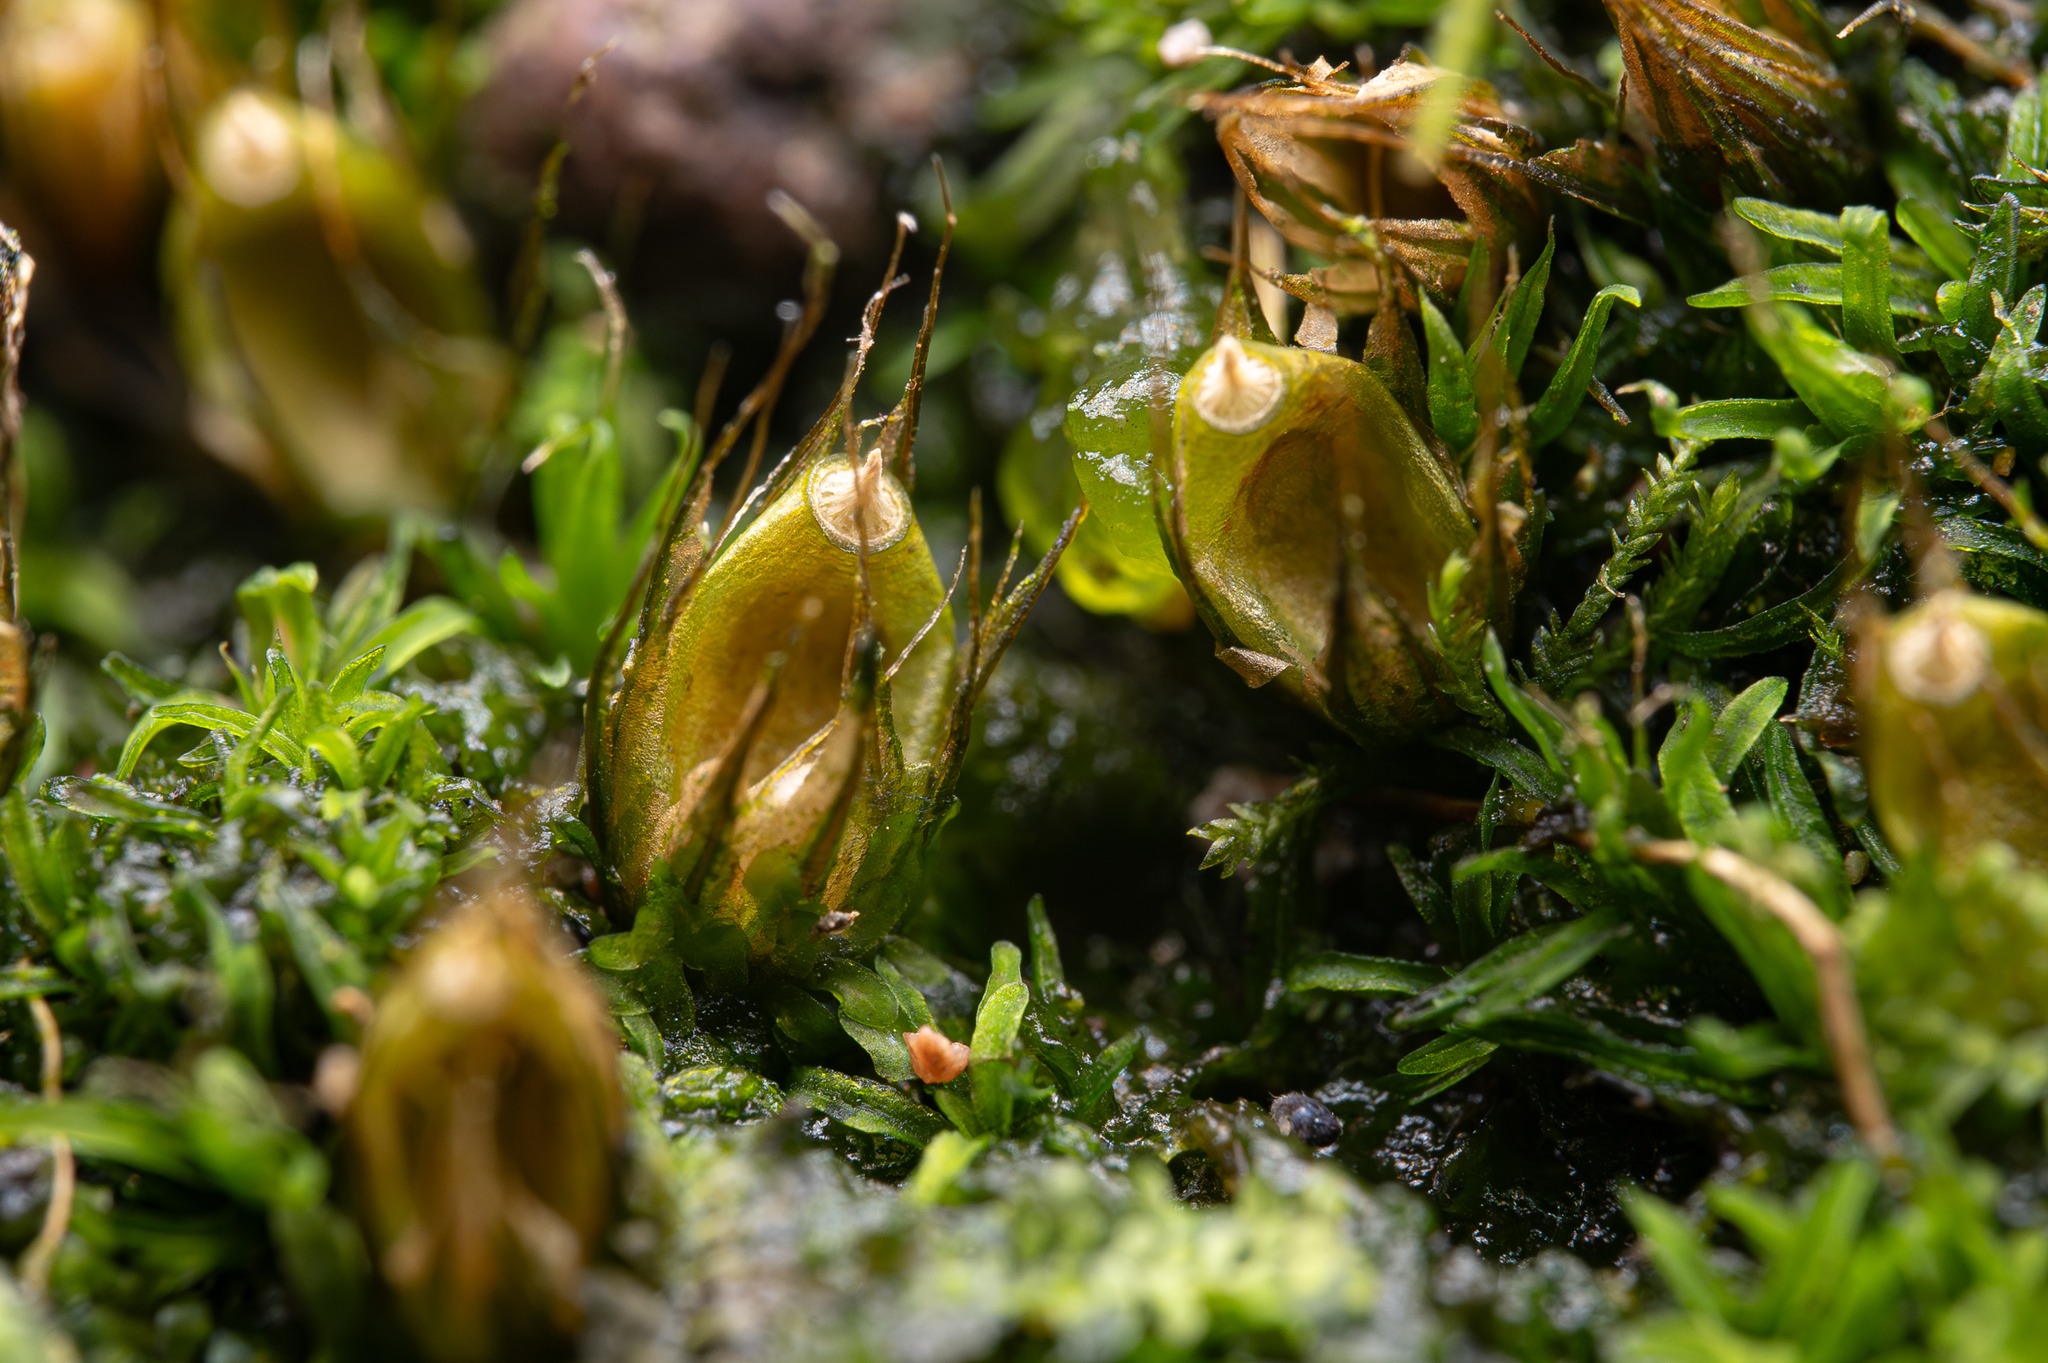 Diphyscum foliosum (Paul Ross)